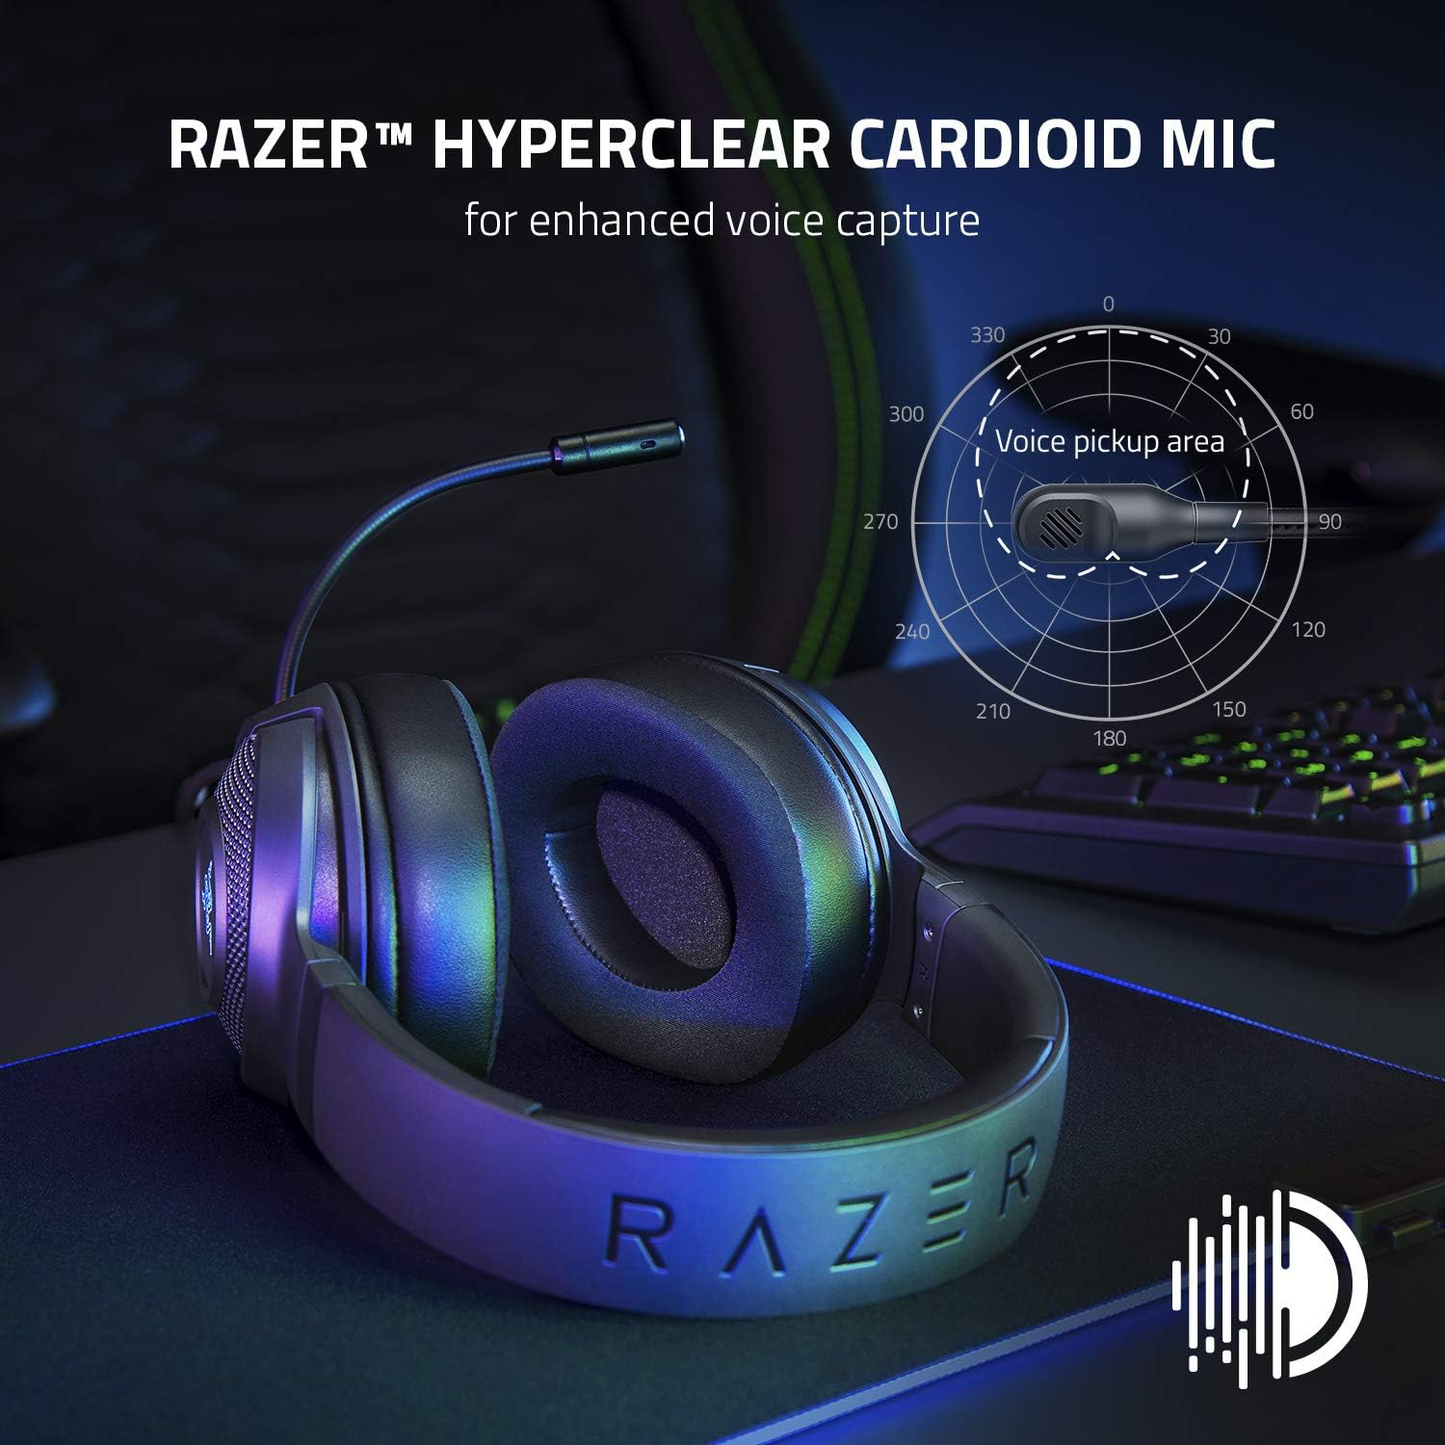 Razer Kraken V3 X Wired Gaming Headphones